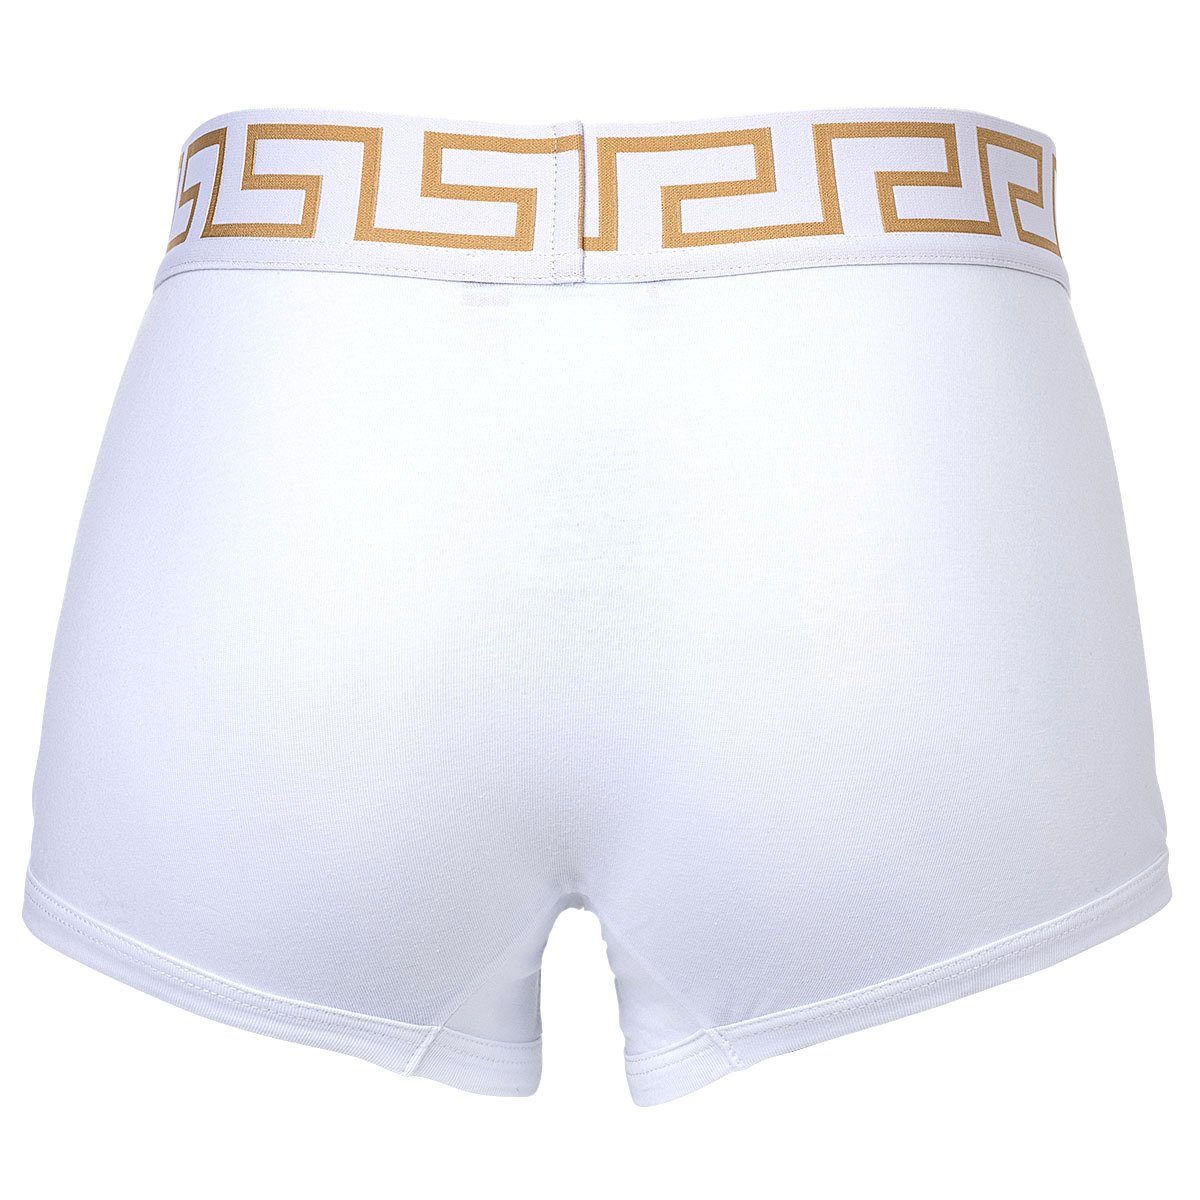 - Boxer Herren TOPEKA, Baumwolle 3er Pack Versace Weiß Slip Shorts,